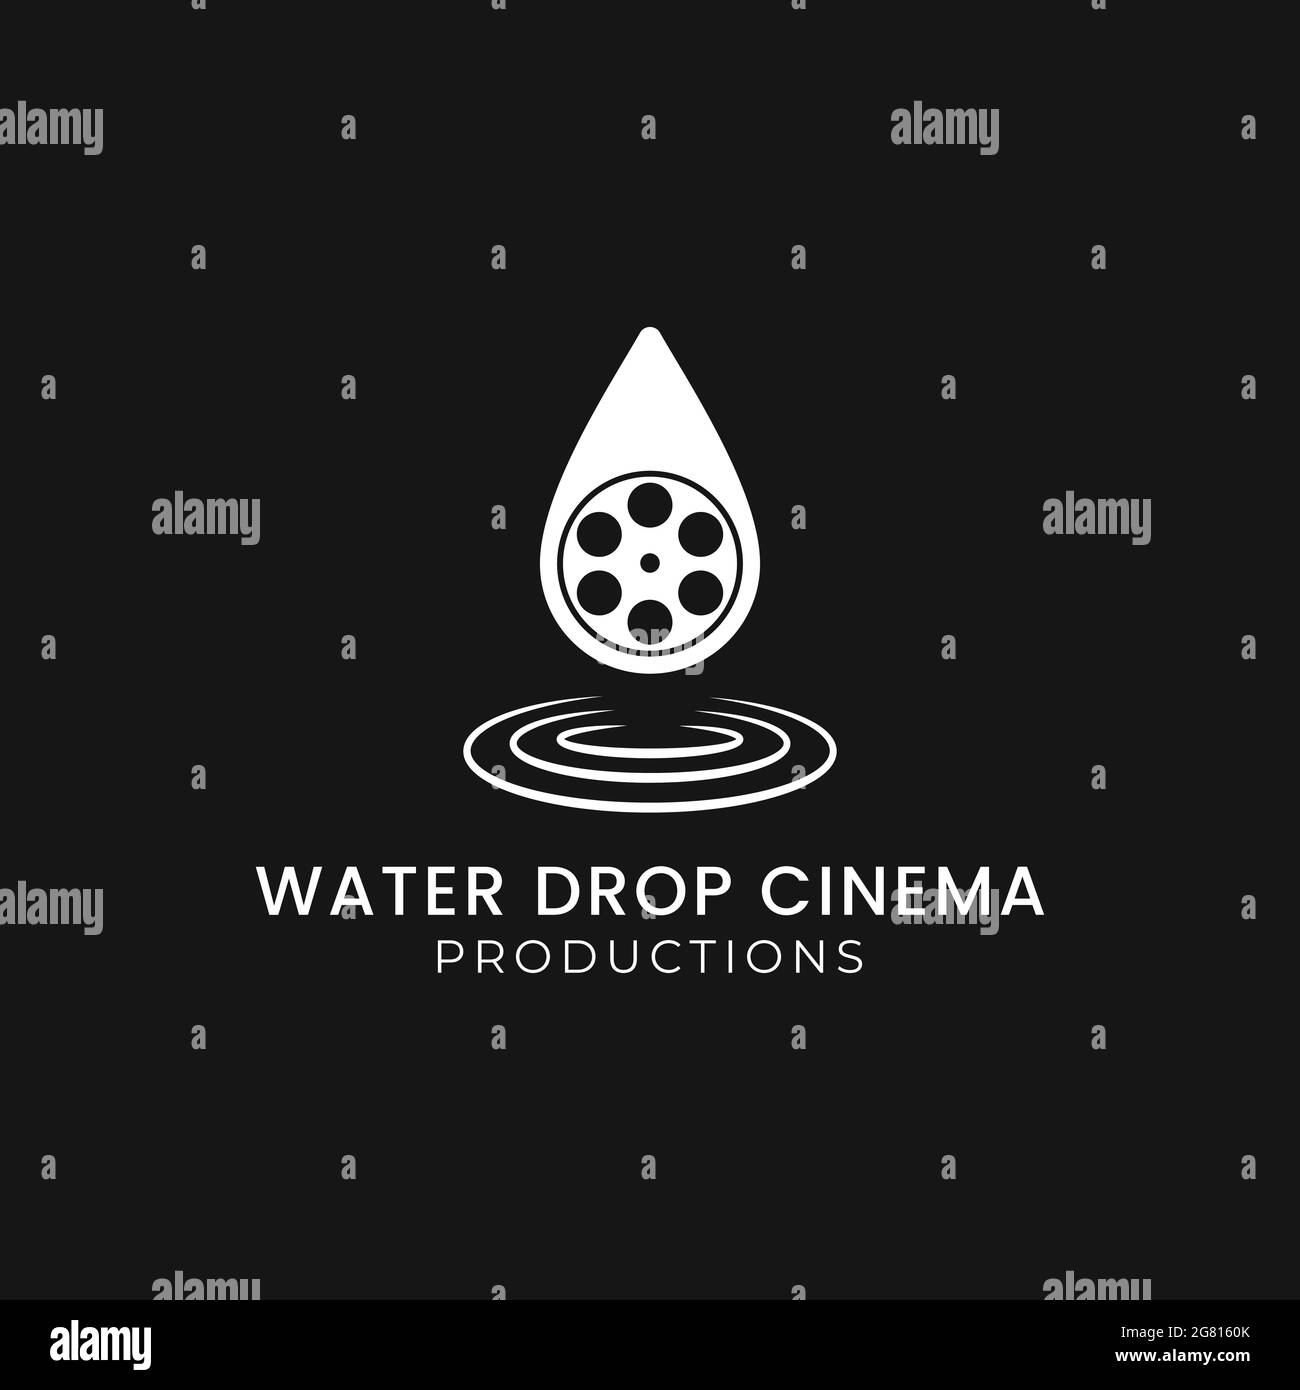 Water Drop Cinema Movie Studio, Cinematography film Roll production concept avec Water Drop logo design illustration vectorielle icône Noir isolé Backgr Illustration de Vecteur